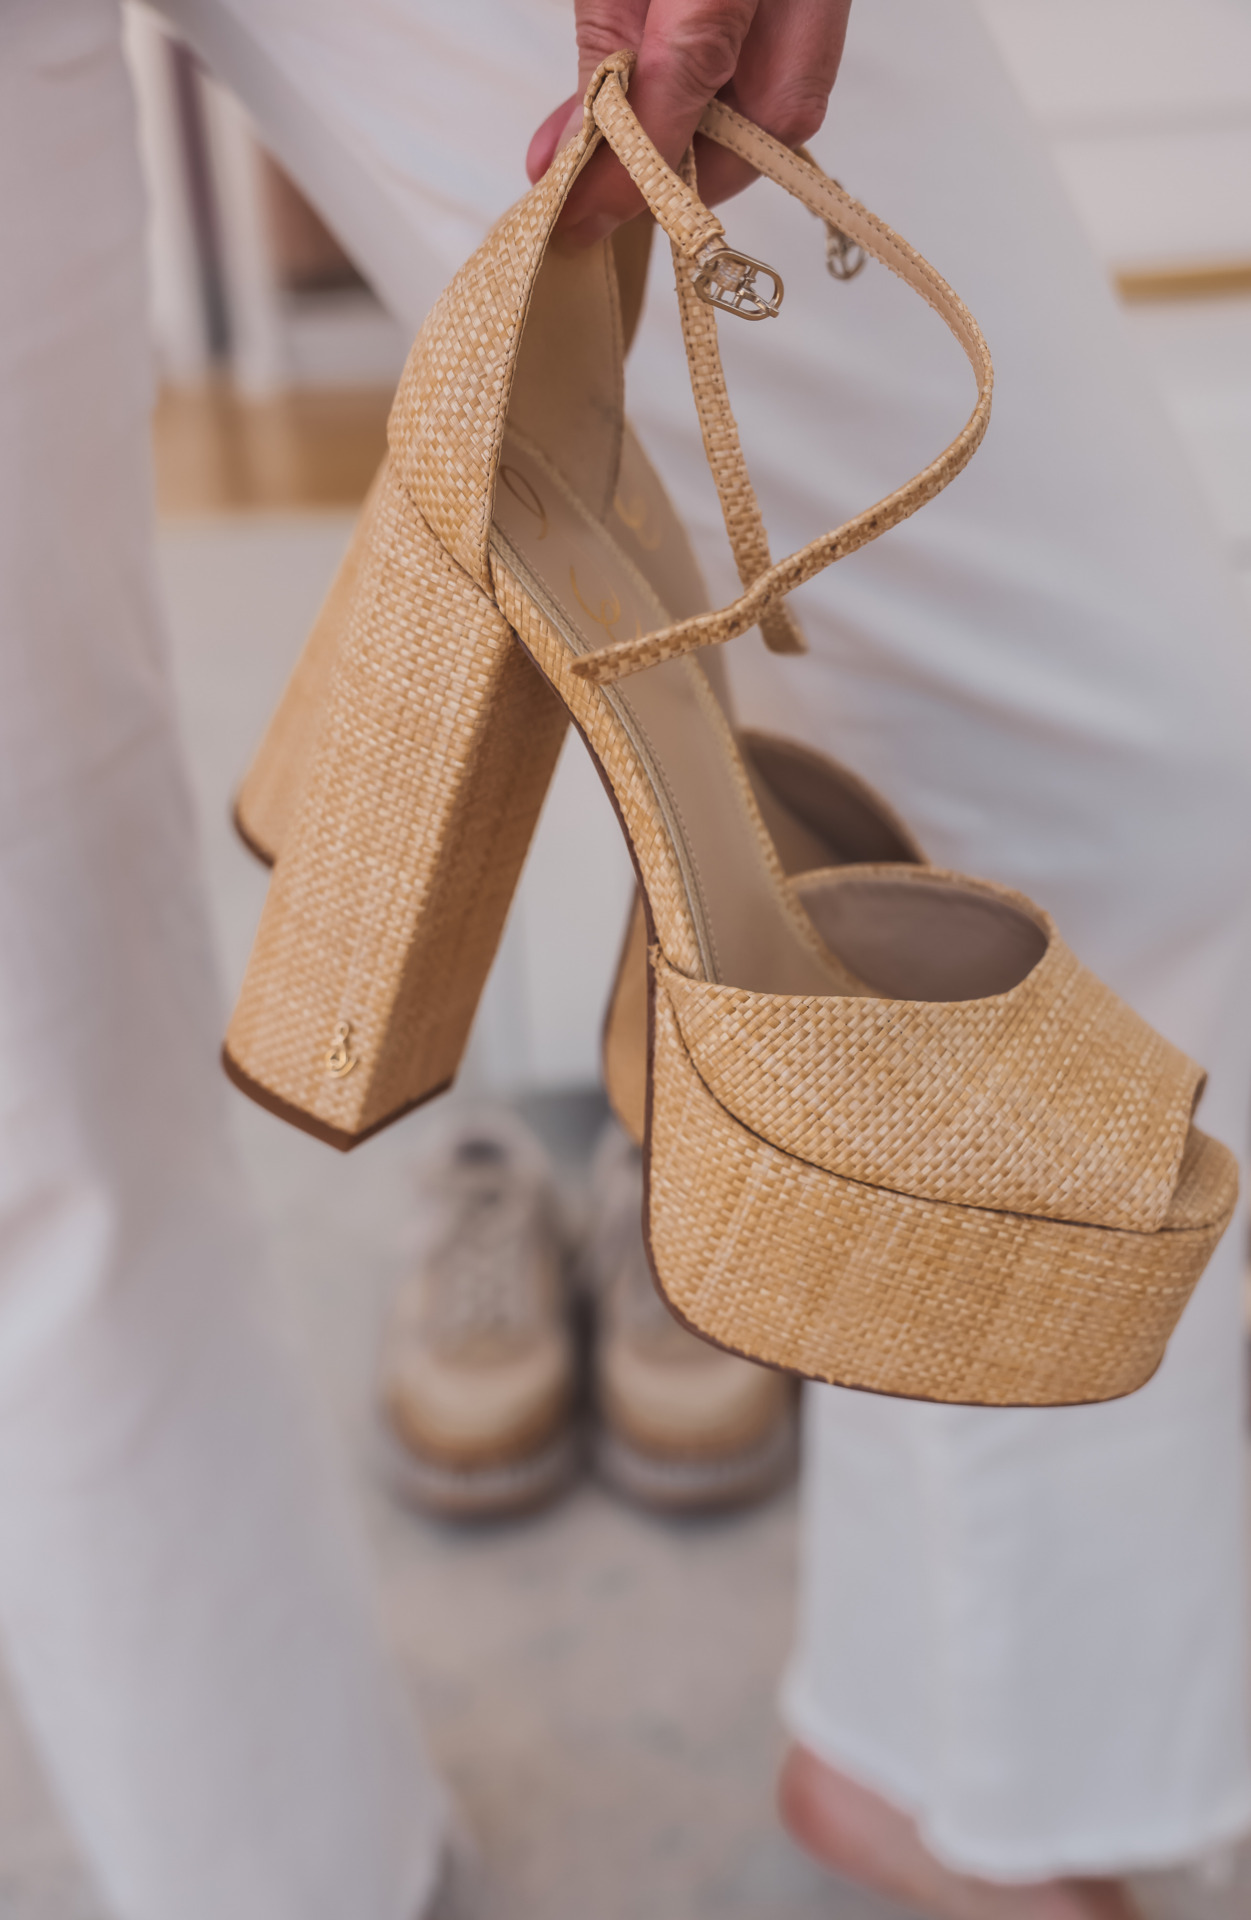 Sam Edelman Platform Sandals | Spring & Summer Shoes